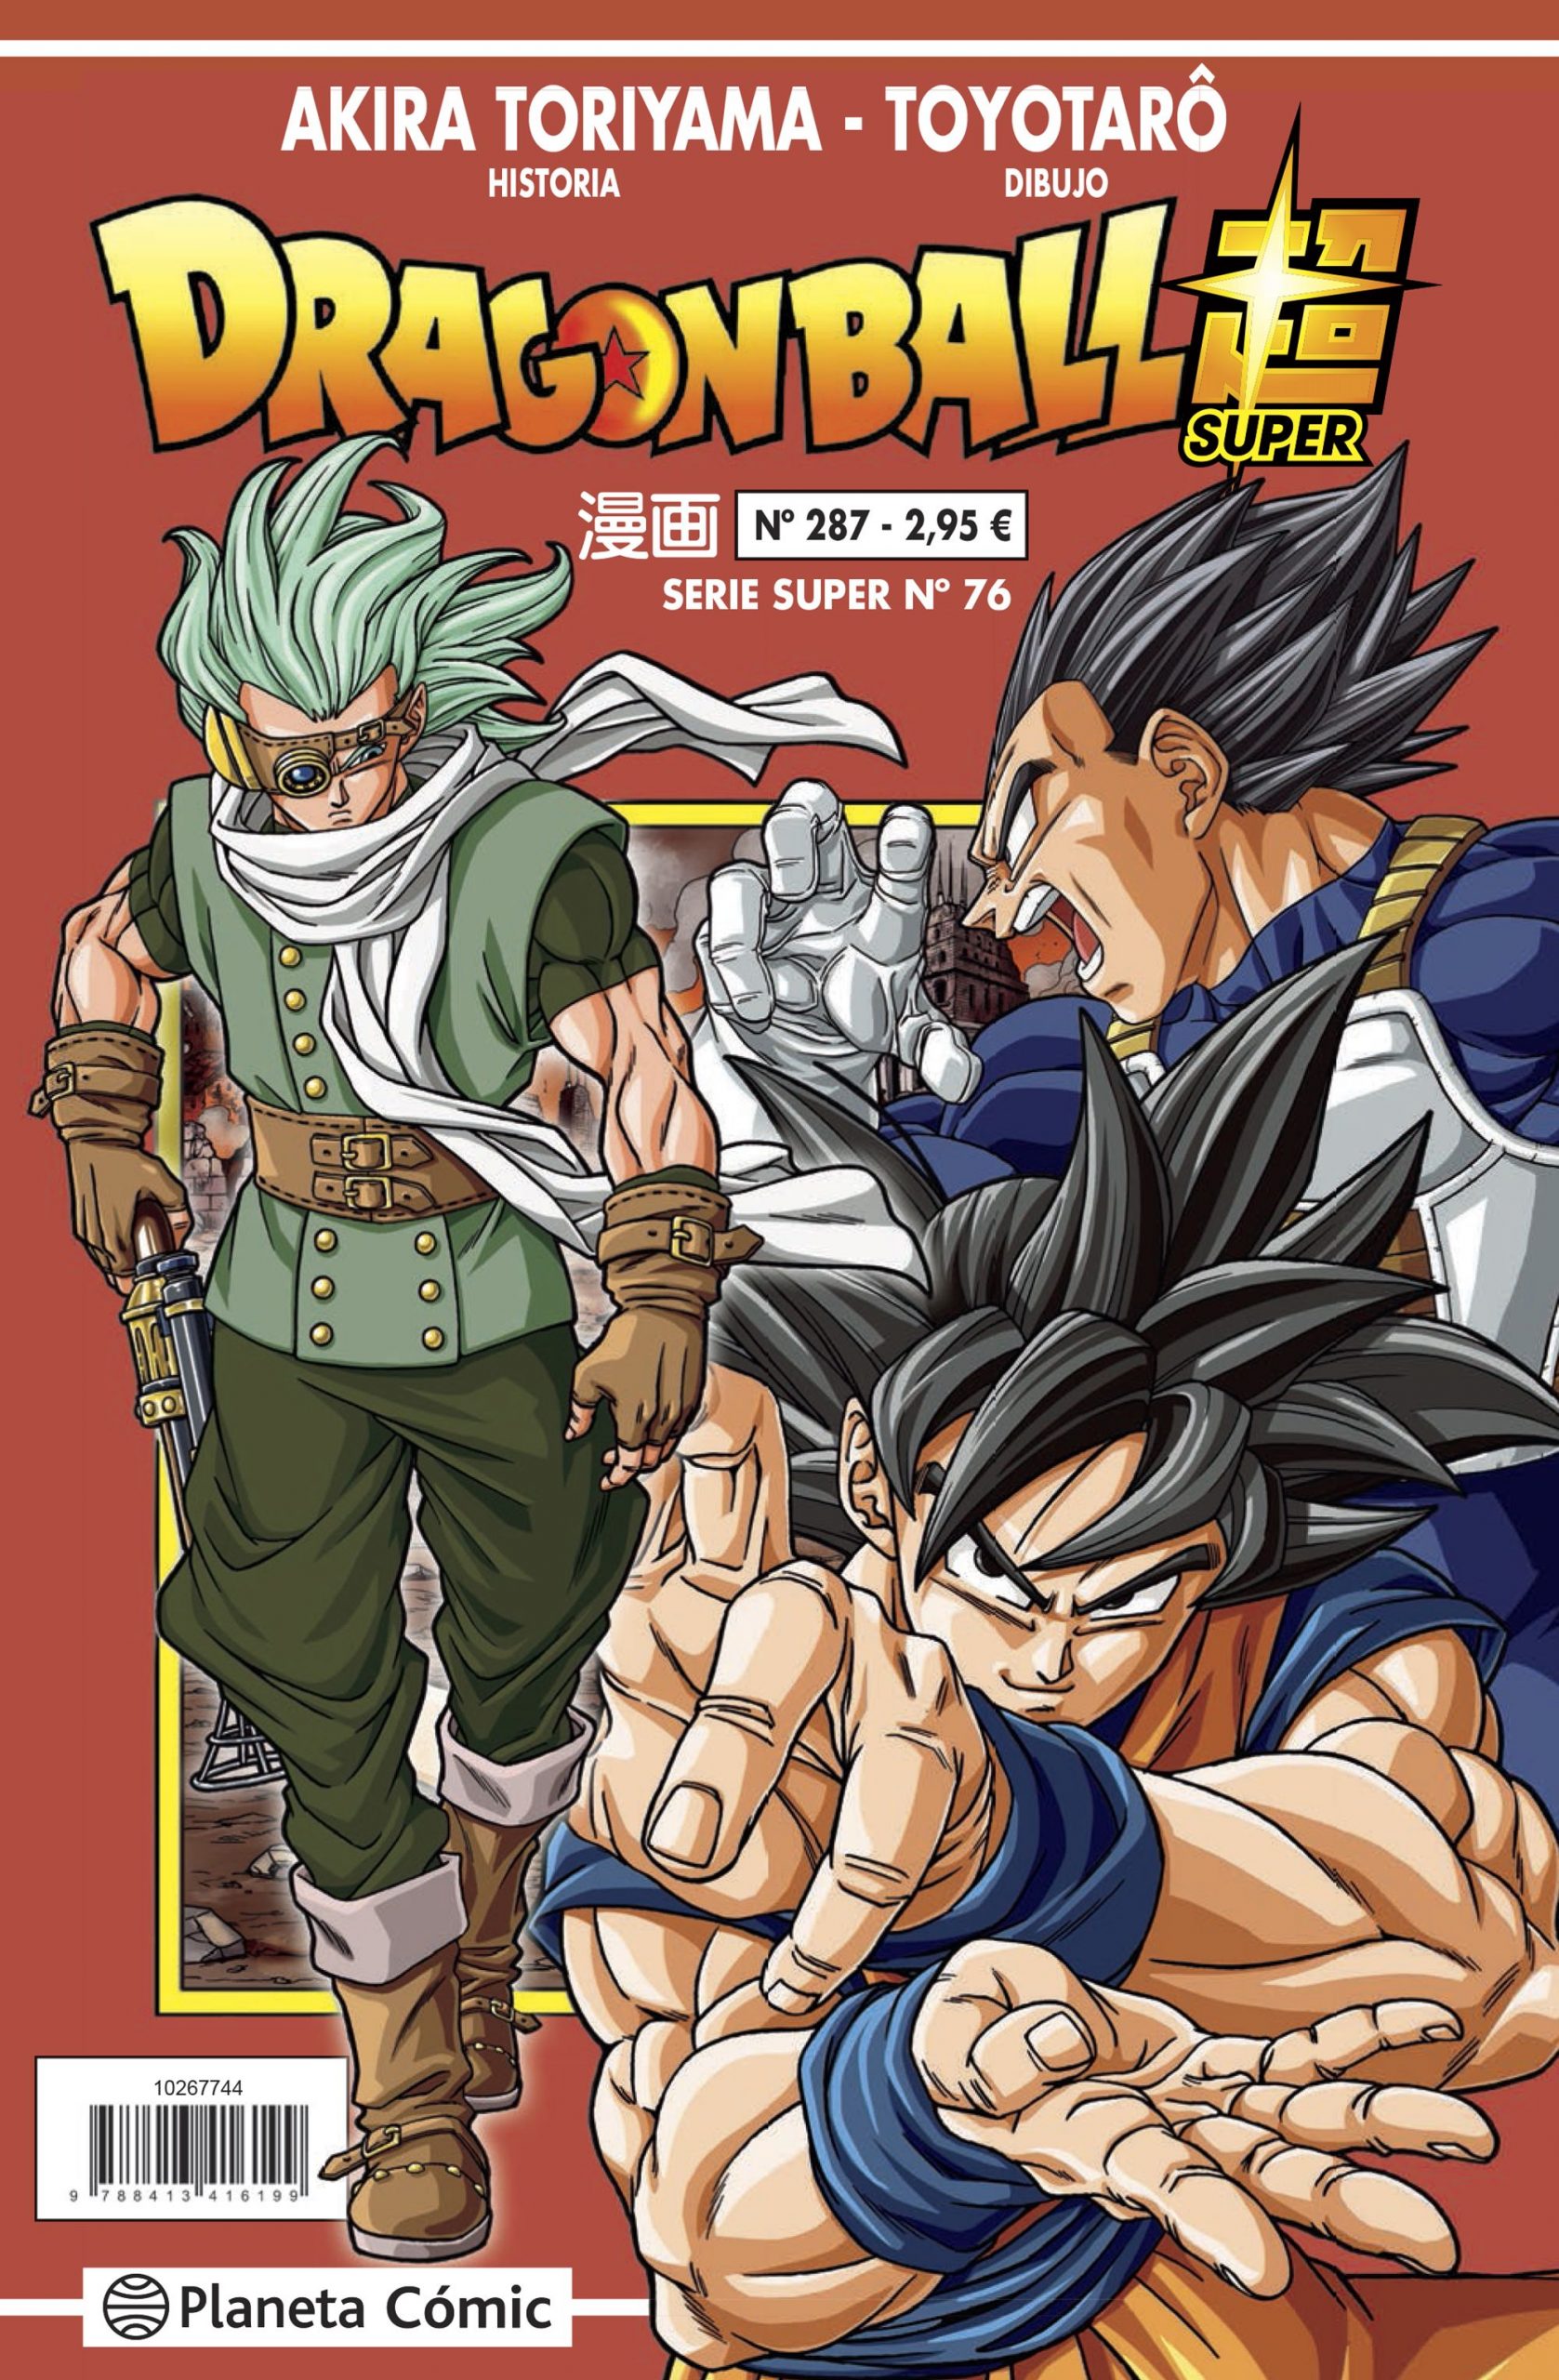 Dragon Ball Super capítulo 95 ya disponible: cómo leer gratis en